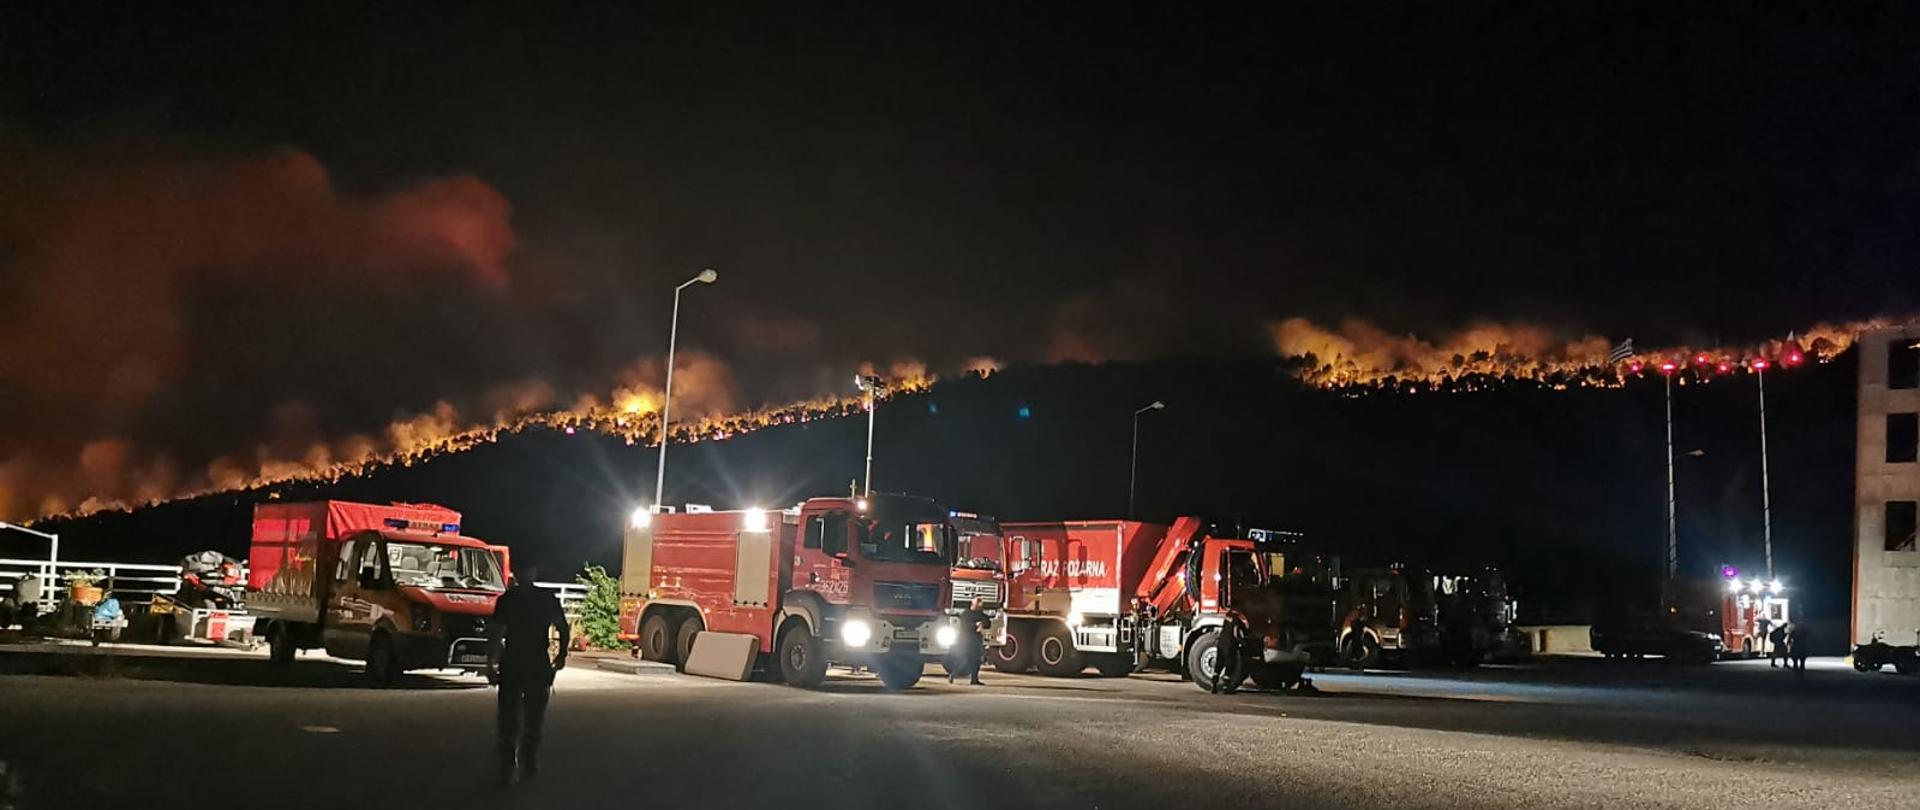 GASZĄ POŻARY W GRECJI. Na zdjęciu widać samochody pożarnicze stojące na placu, za nimi w tle widać płonący las, całe zbocze góry zalesione, bardzo duży pożar - płomienie, dym. 